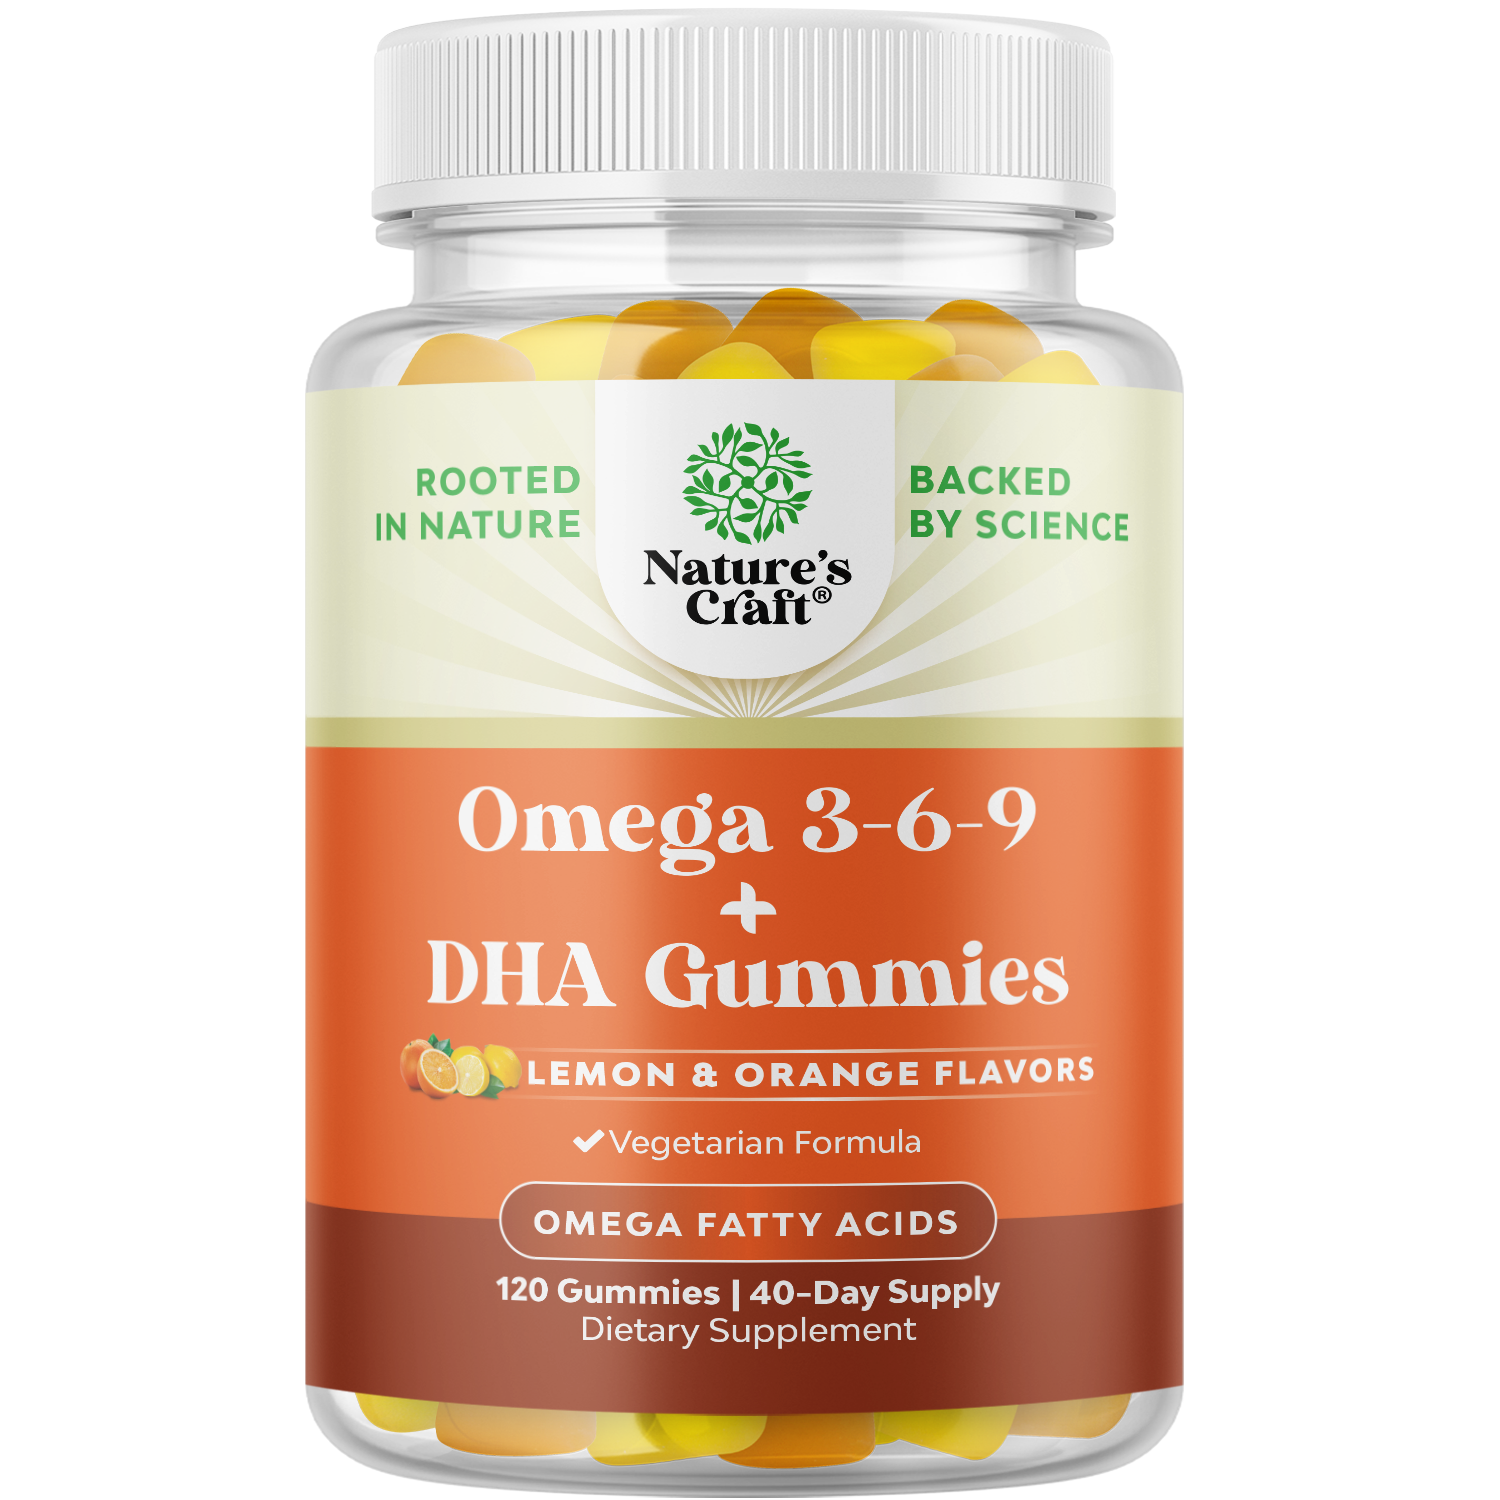 Omega 3-6-9 + DHA Gummies - 120 Gummies